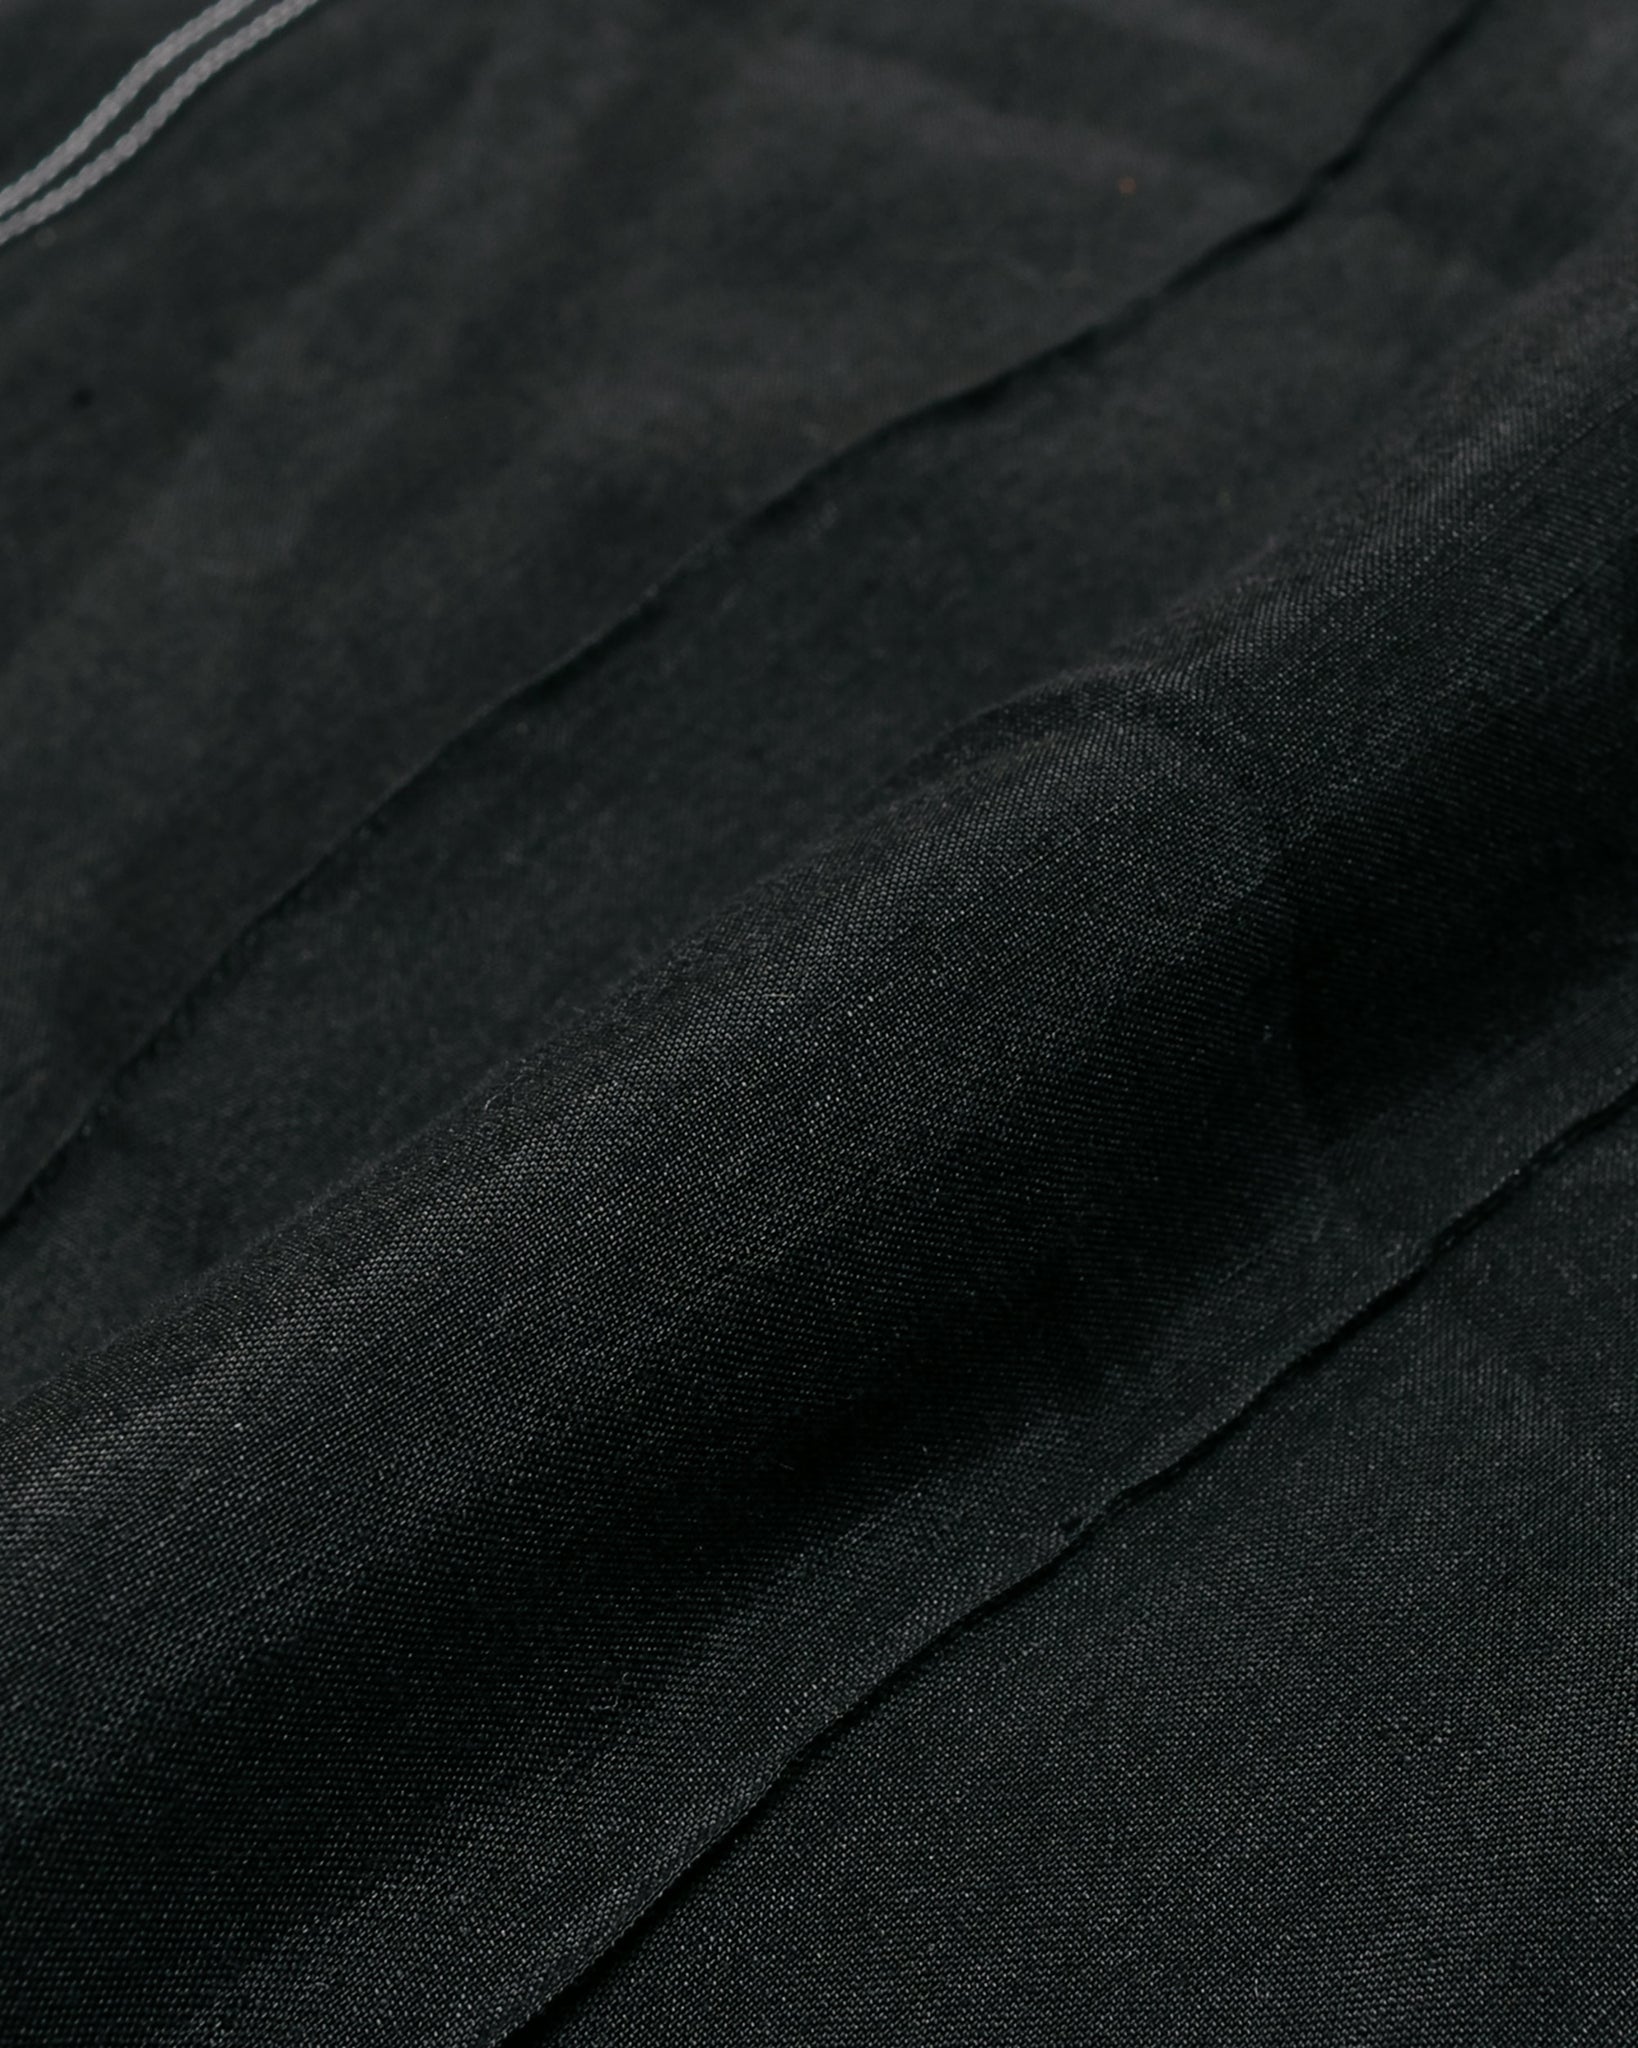 Wanze Work Trouser Linen Viscose Black fabric